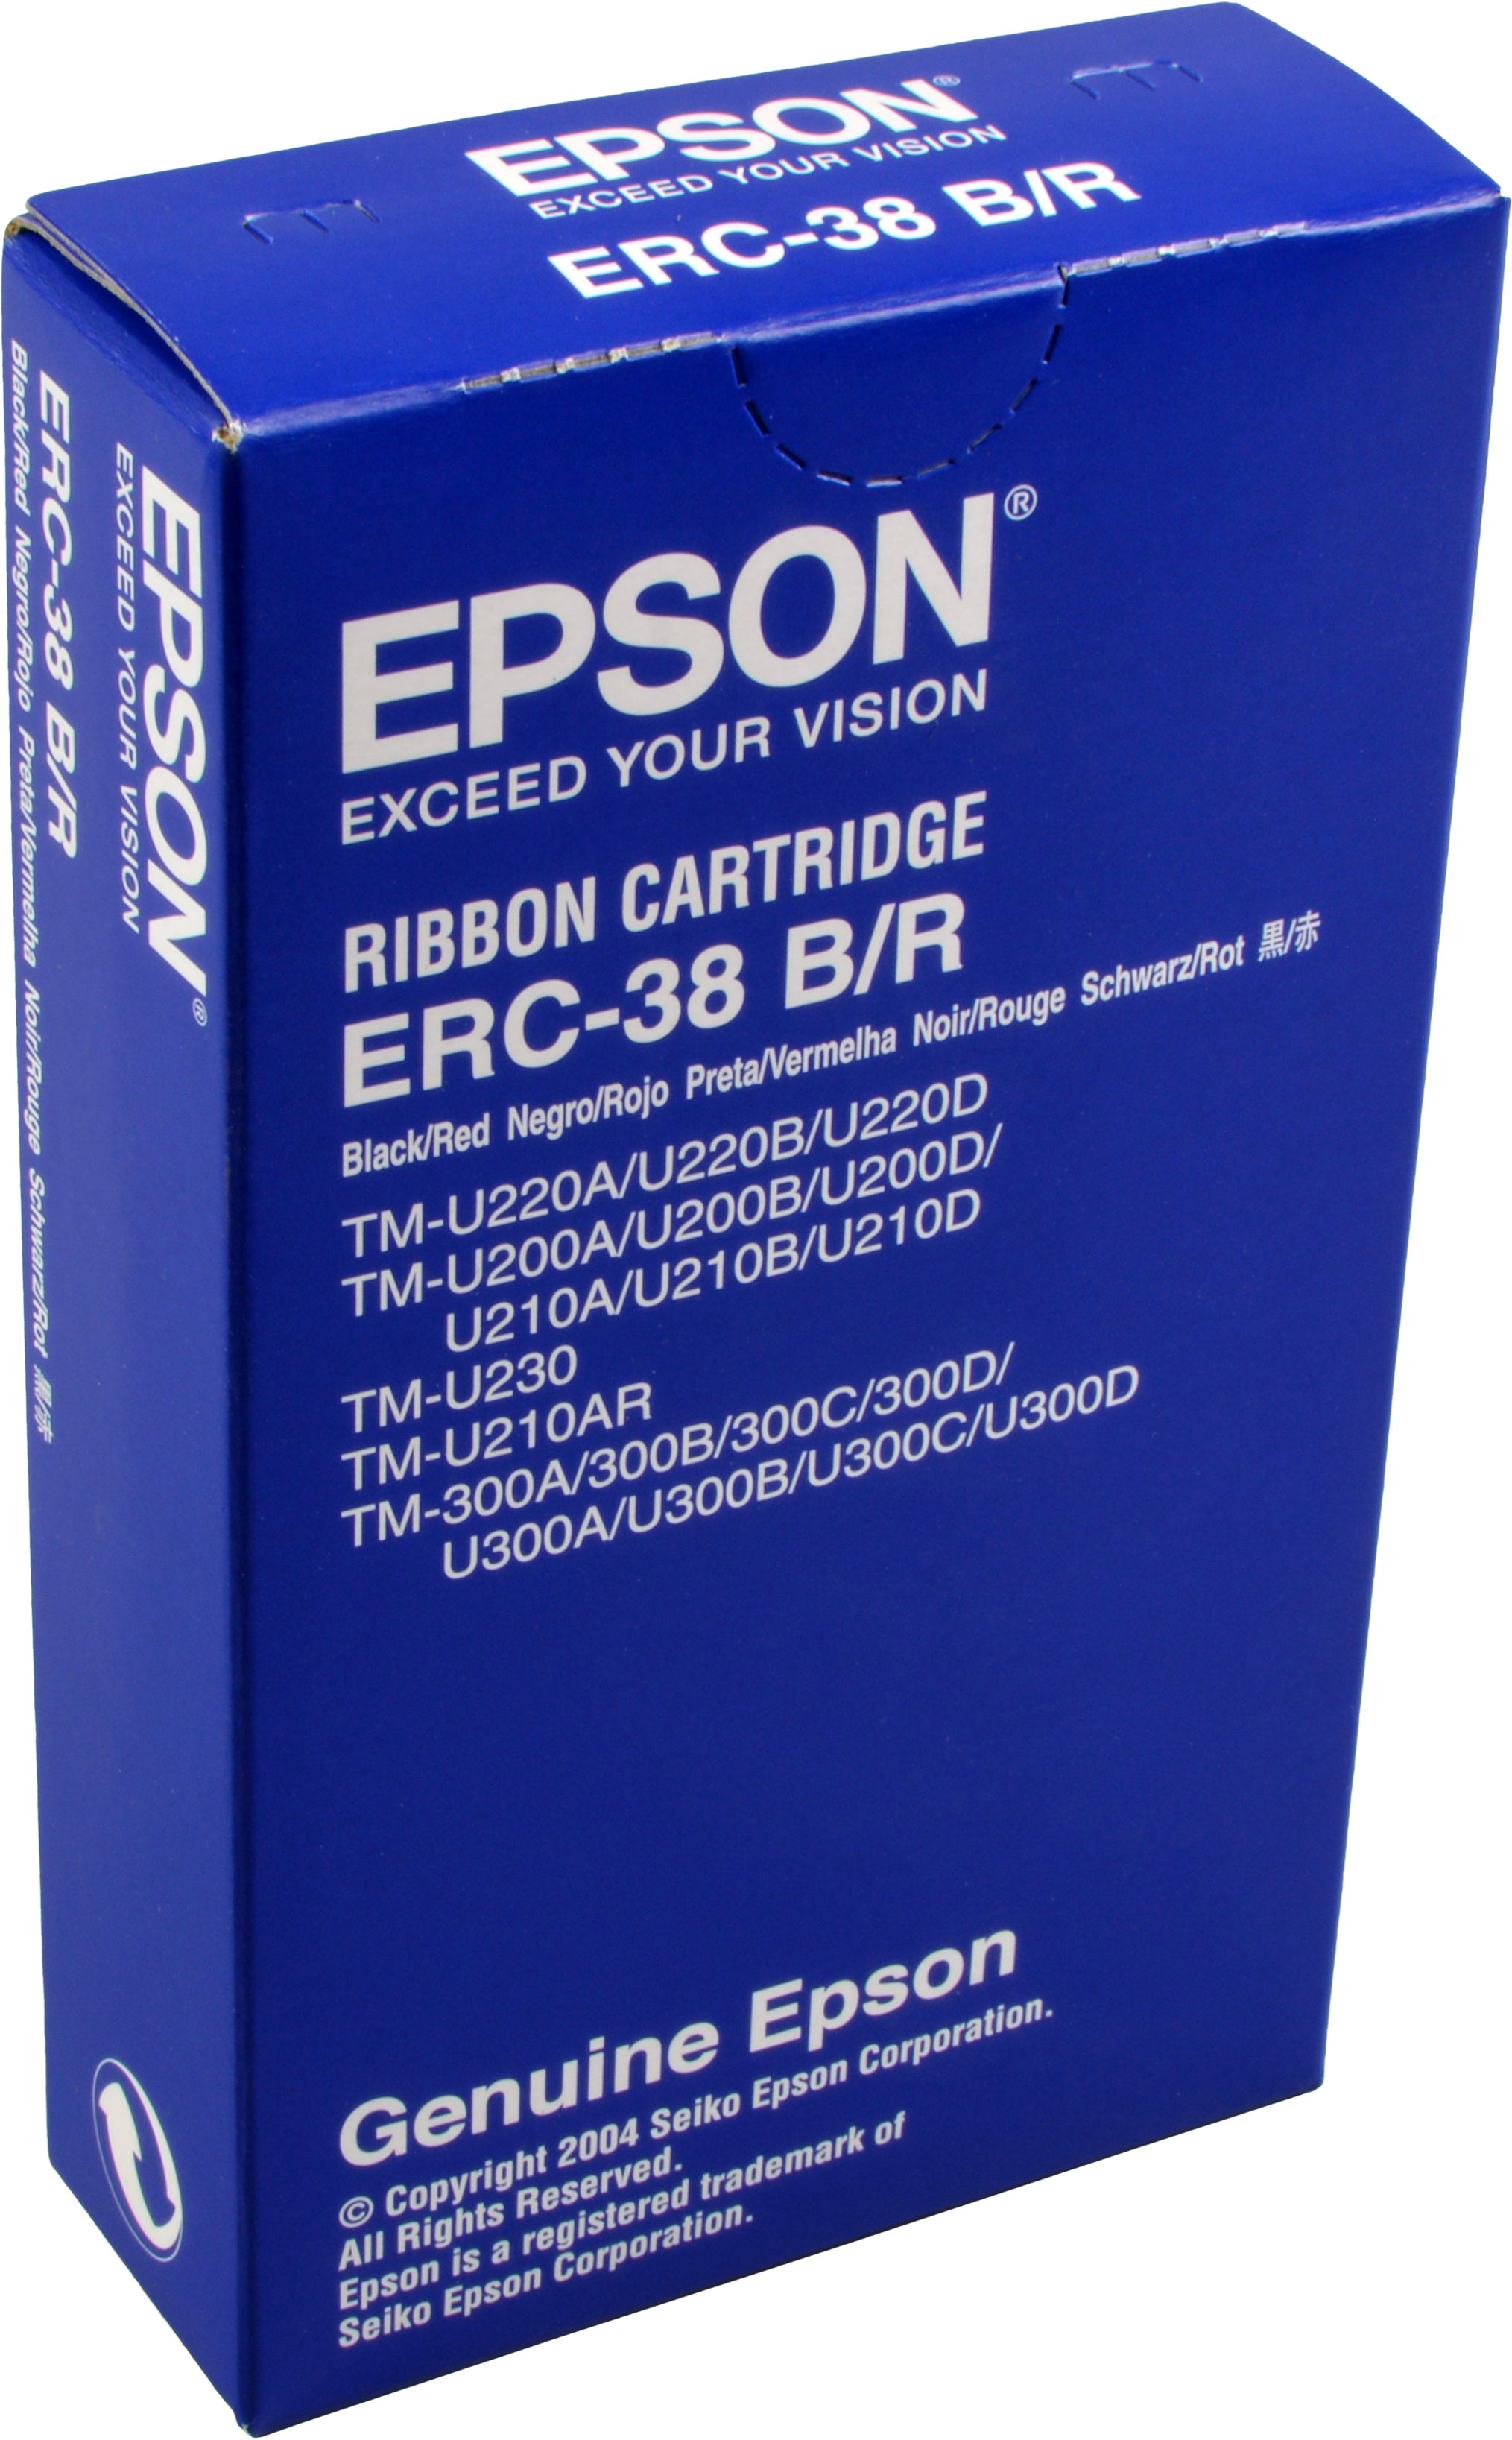 Epson Originalband ERC-38 BR  schwarz / rot  C43S015376